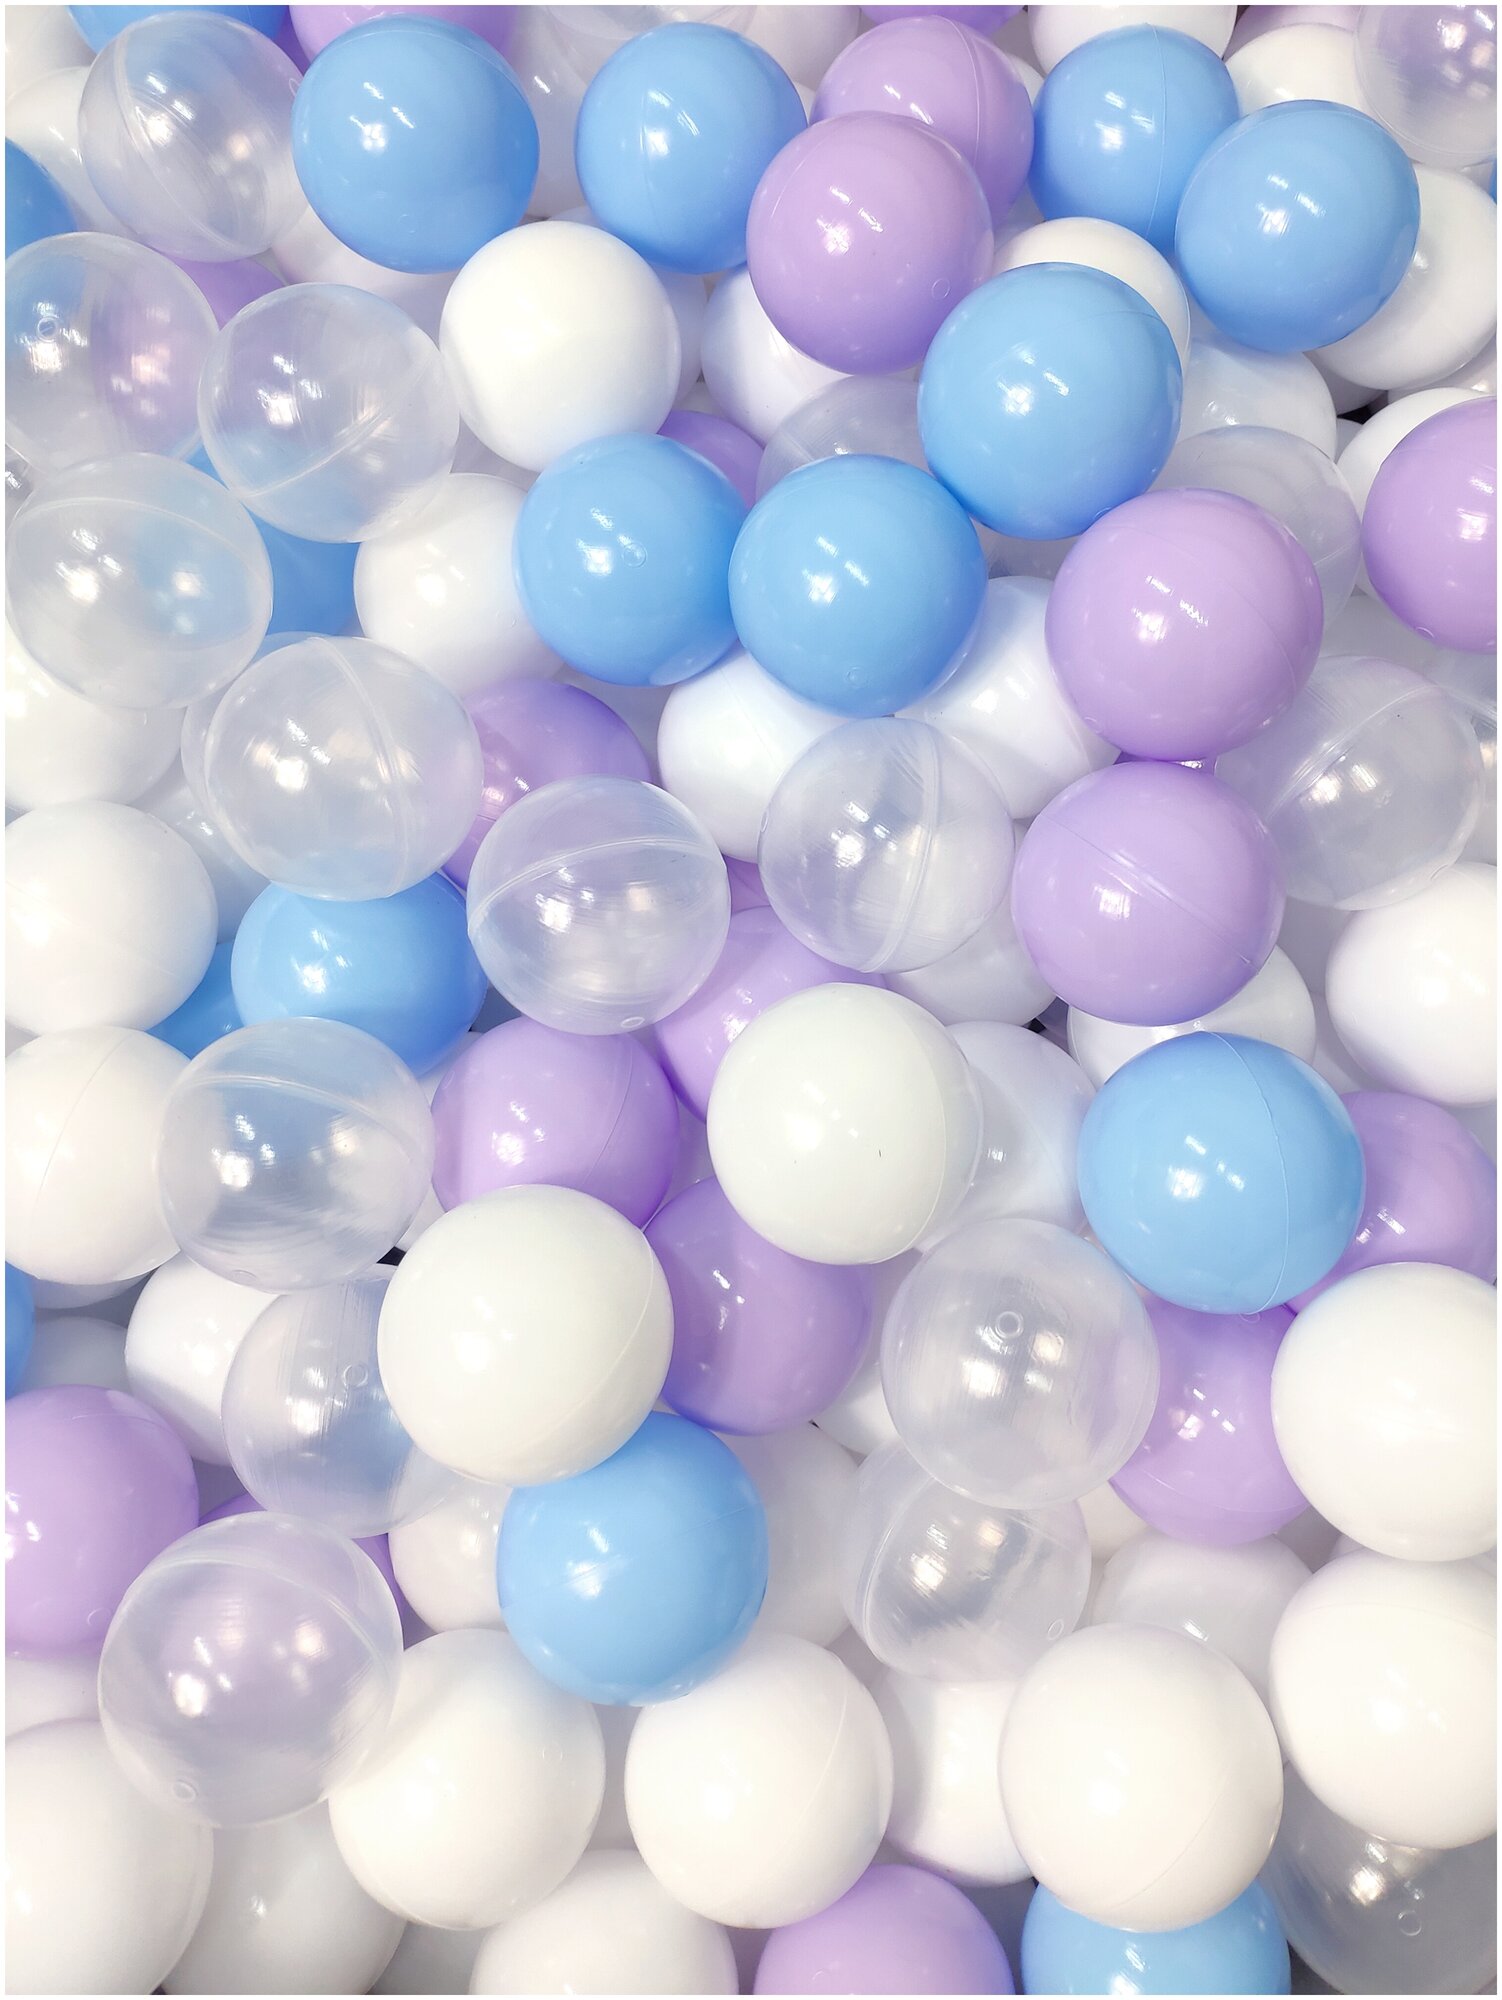 Шарики для сухого бассейна Лавандовая пена 100 шт диаметр 7 см: голубой, прозрачный, лавандовый, белый (sbh159-100)